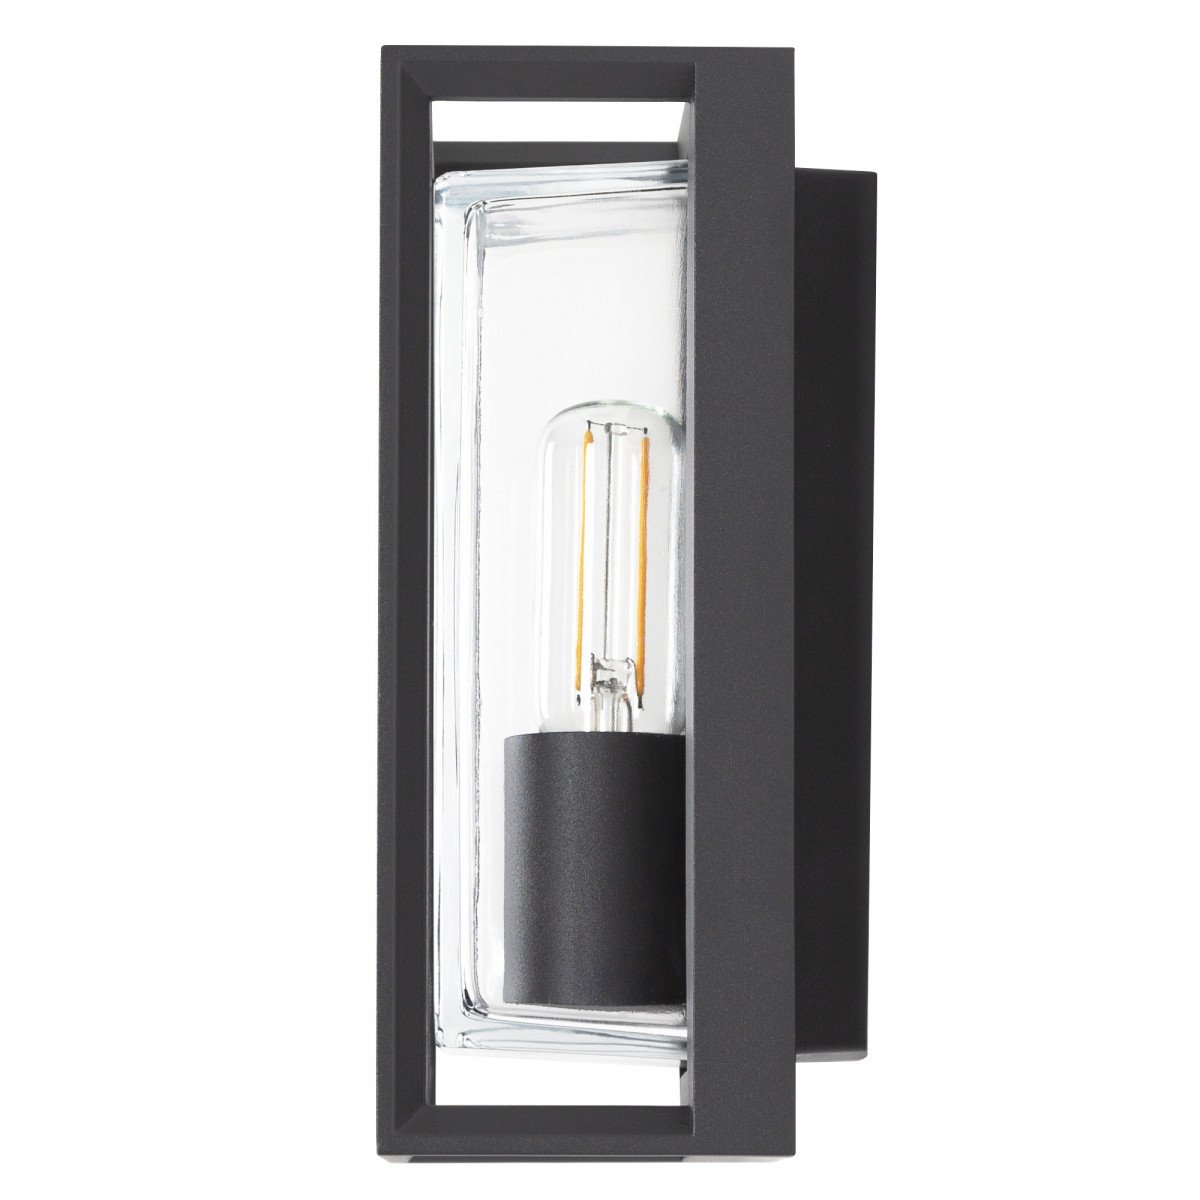 Applique moderne anthracite, design de boîte moderne, cadre gris foncé avec verre rectangulaire transparent, la source de lumière est visible dans le modèle de luminaire Eaton